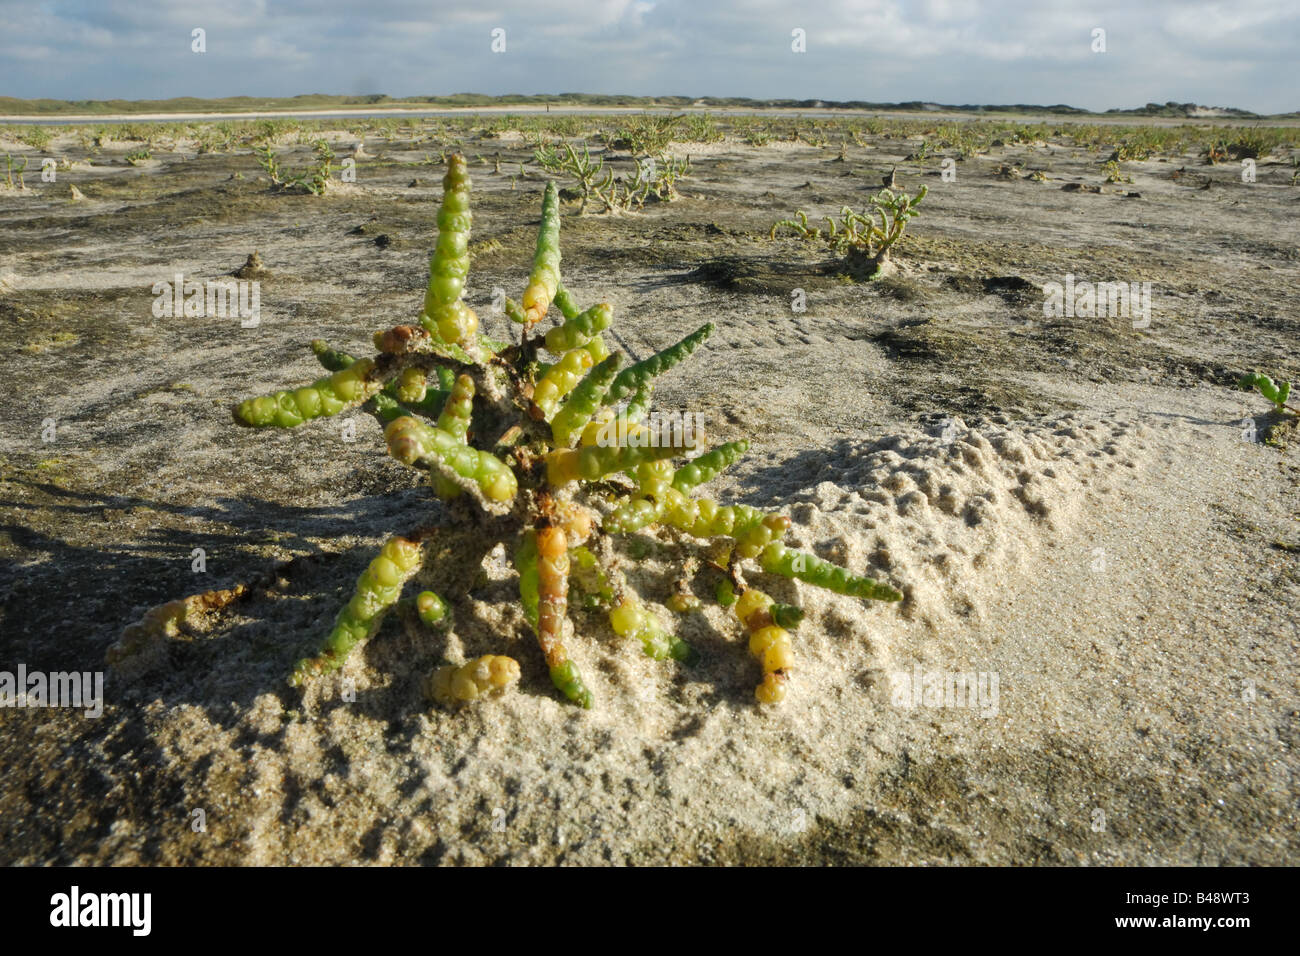 salicornia pianta salmastra sabbia plant Riserva De Slufter Texel isole Frisone Freesland Holland Olanda Mare del Nord north sea Stock Photo